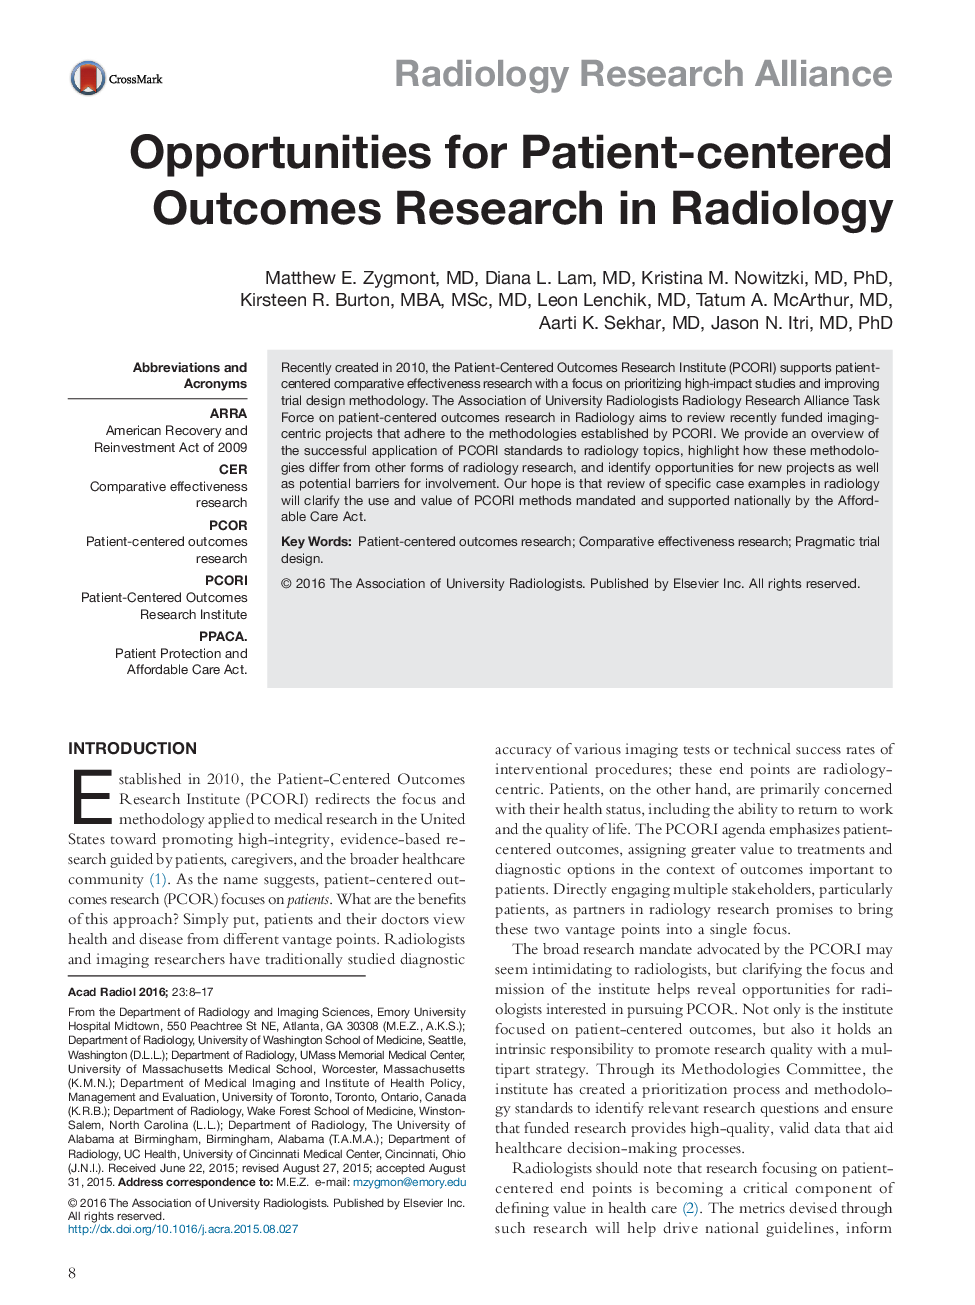 فرصت های پژوهشی در رادیولوژی نتایج محور بیمار 